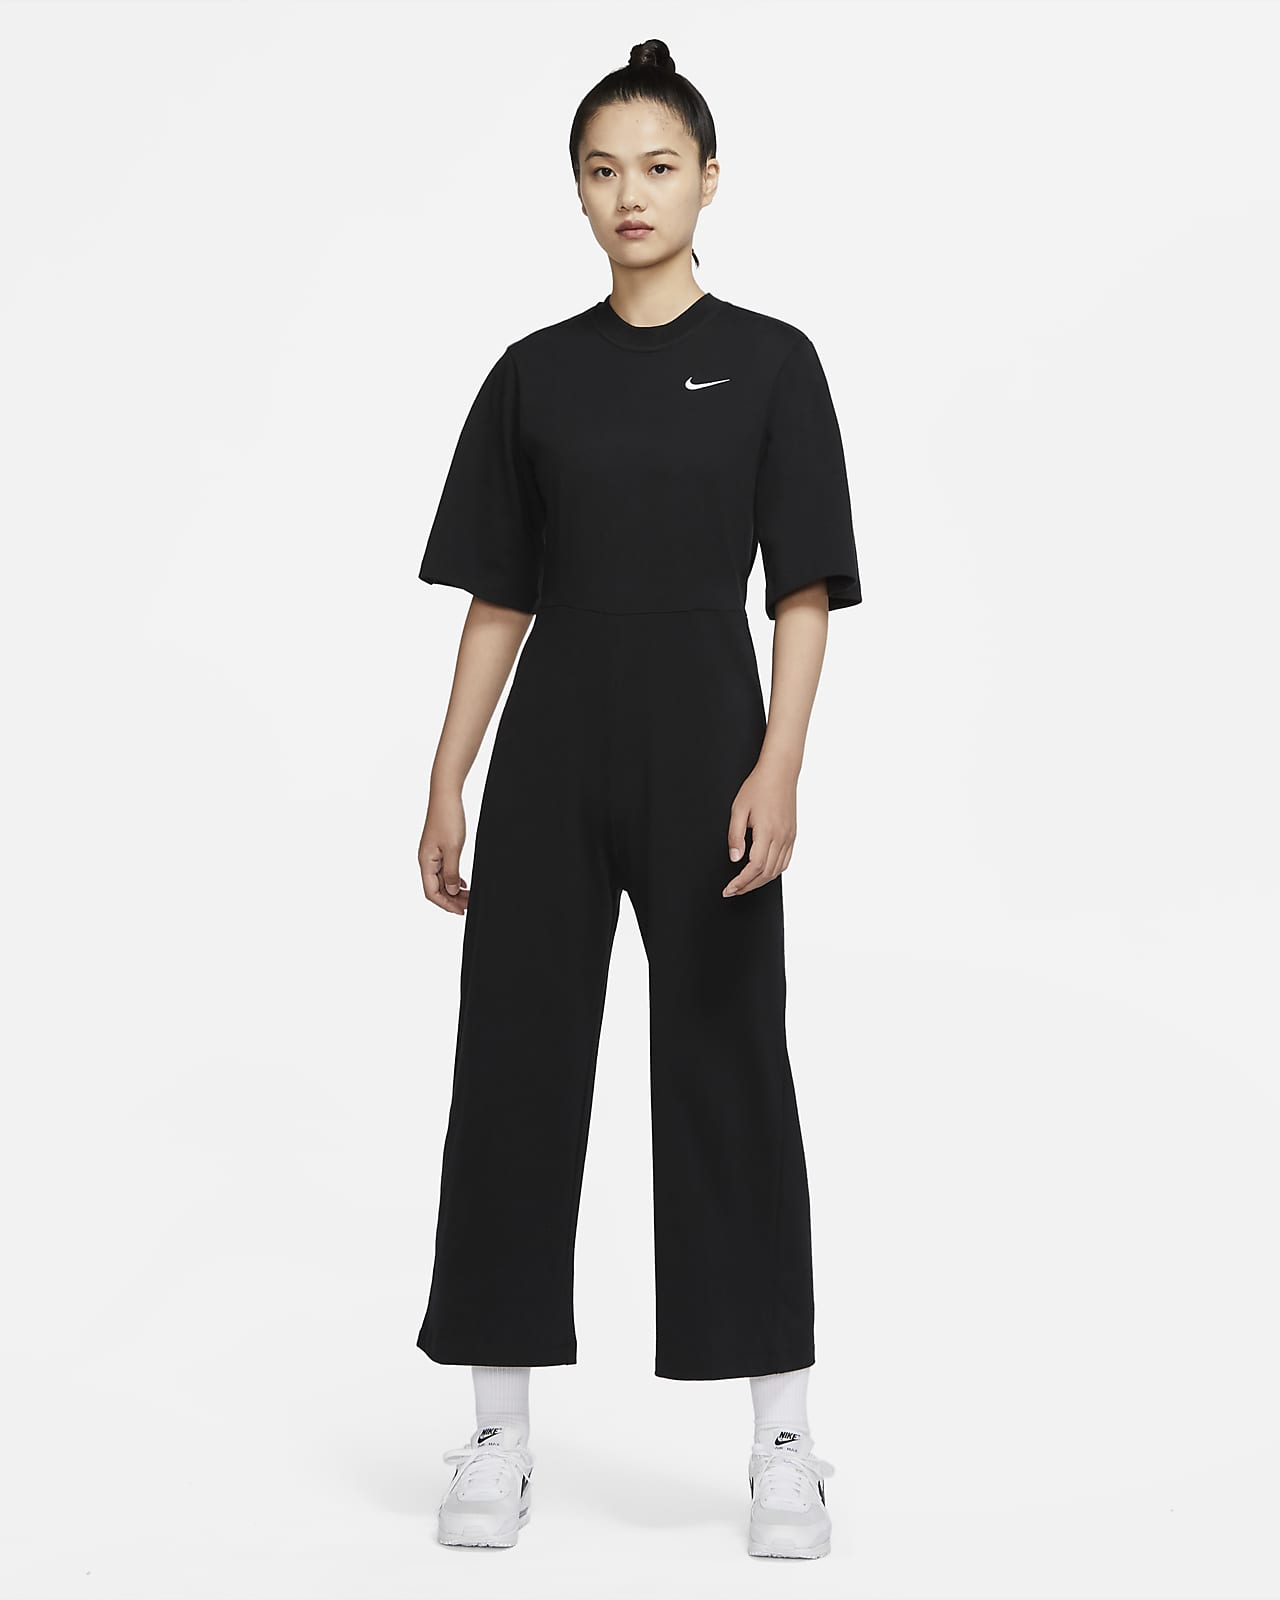 Nike Sportswear Women's Jersey Jumpsuit